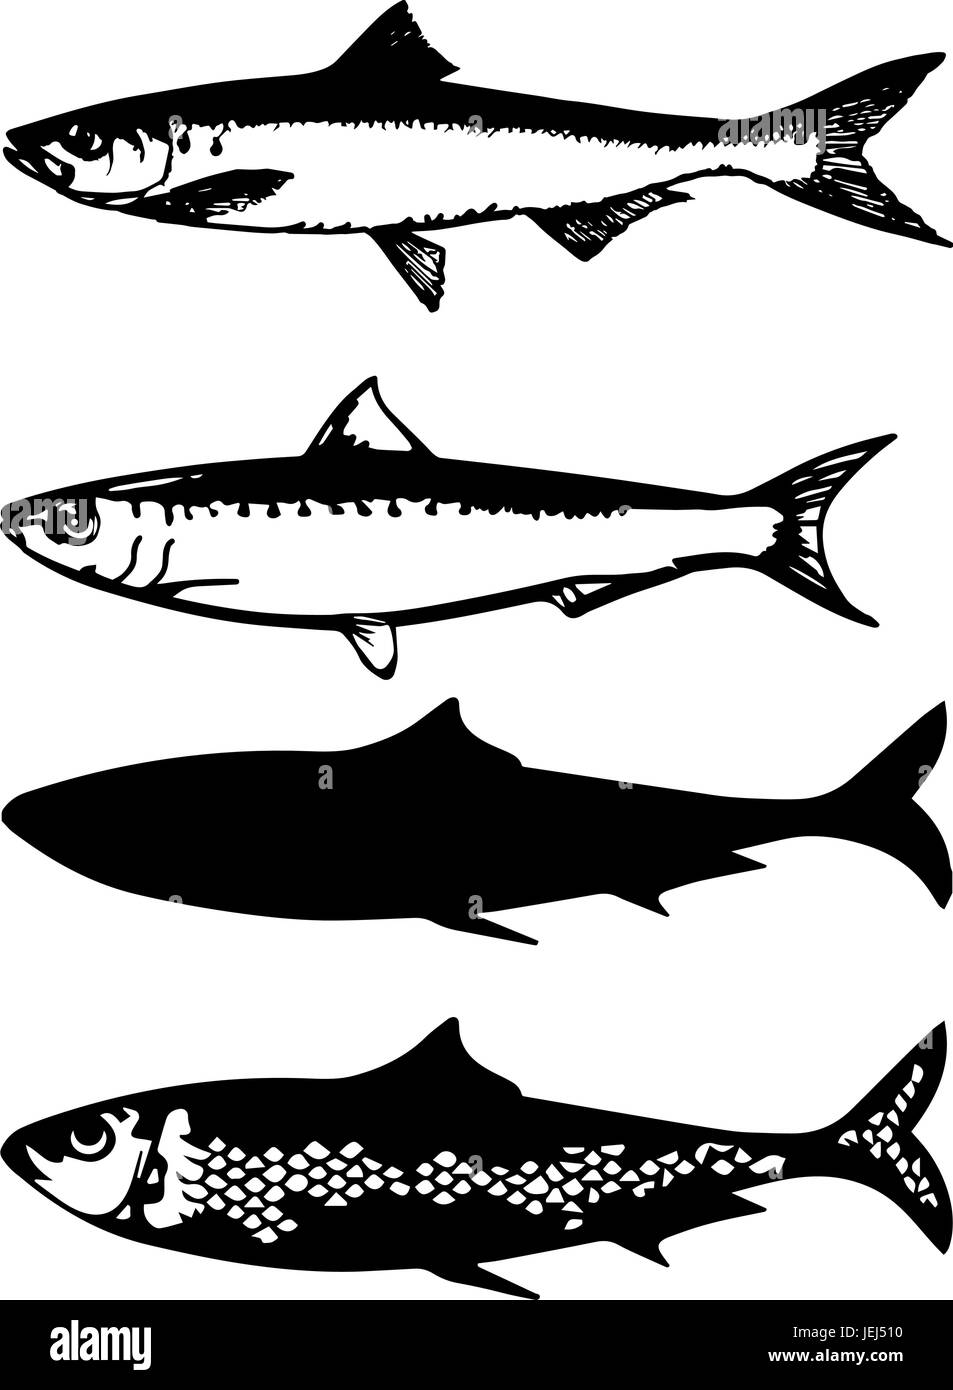 Vecteur de poissons sardines, noir et blanc, cut out Illustration de Vecteur